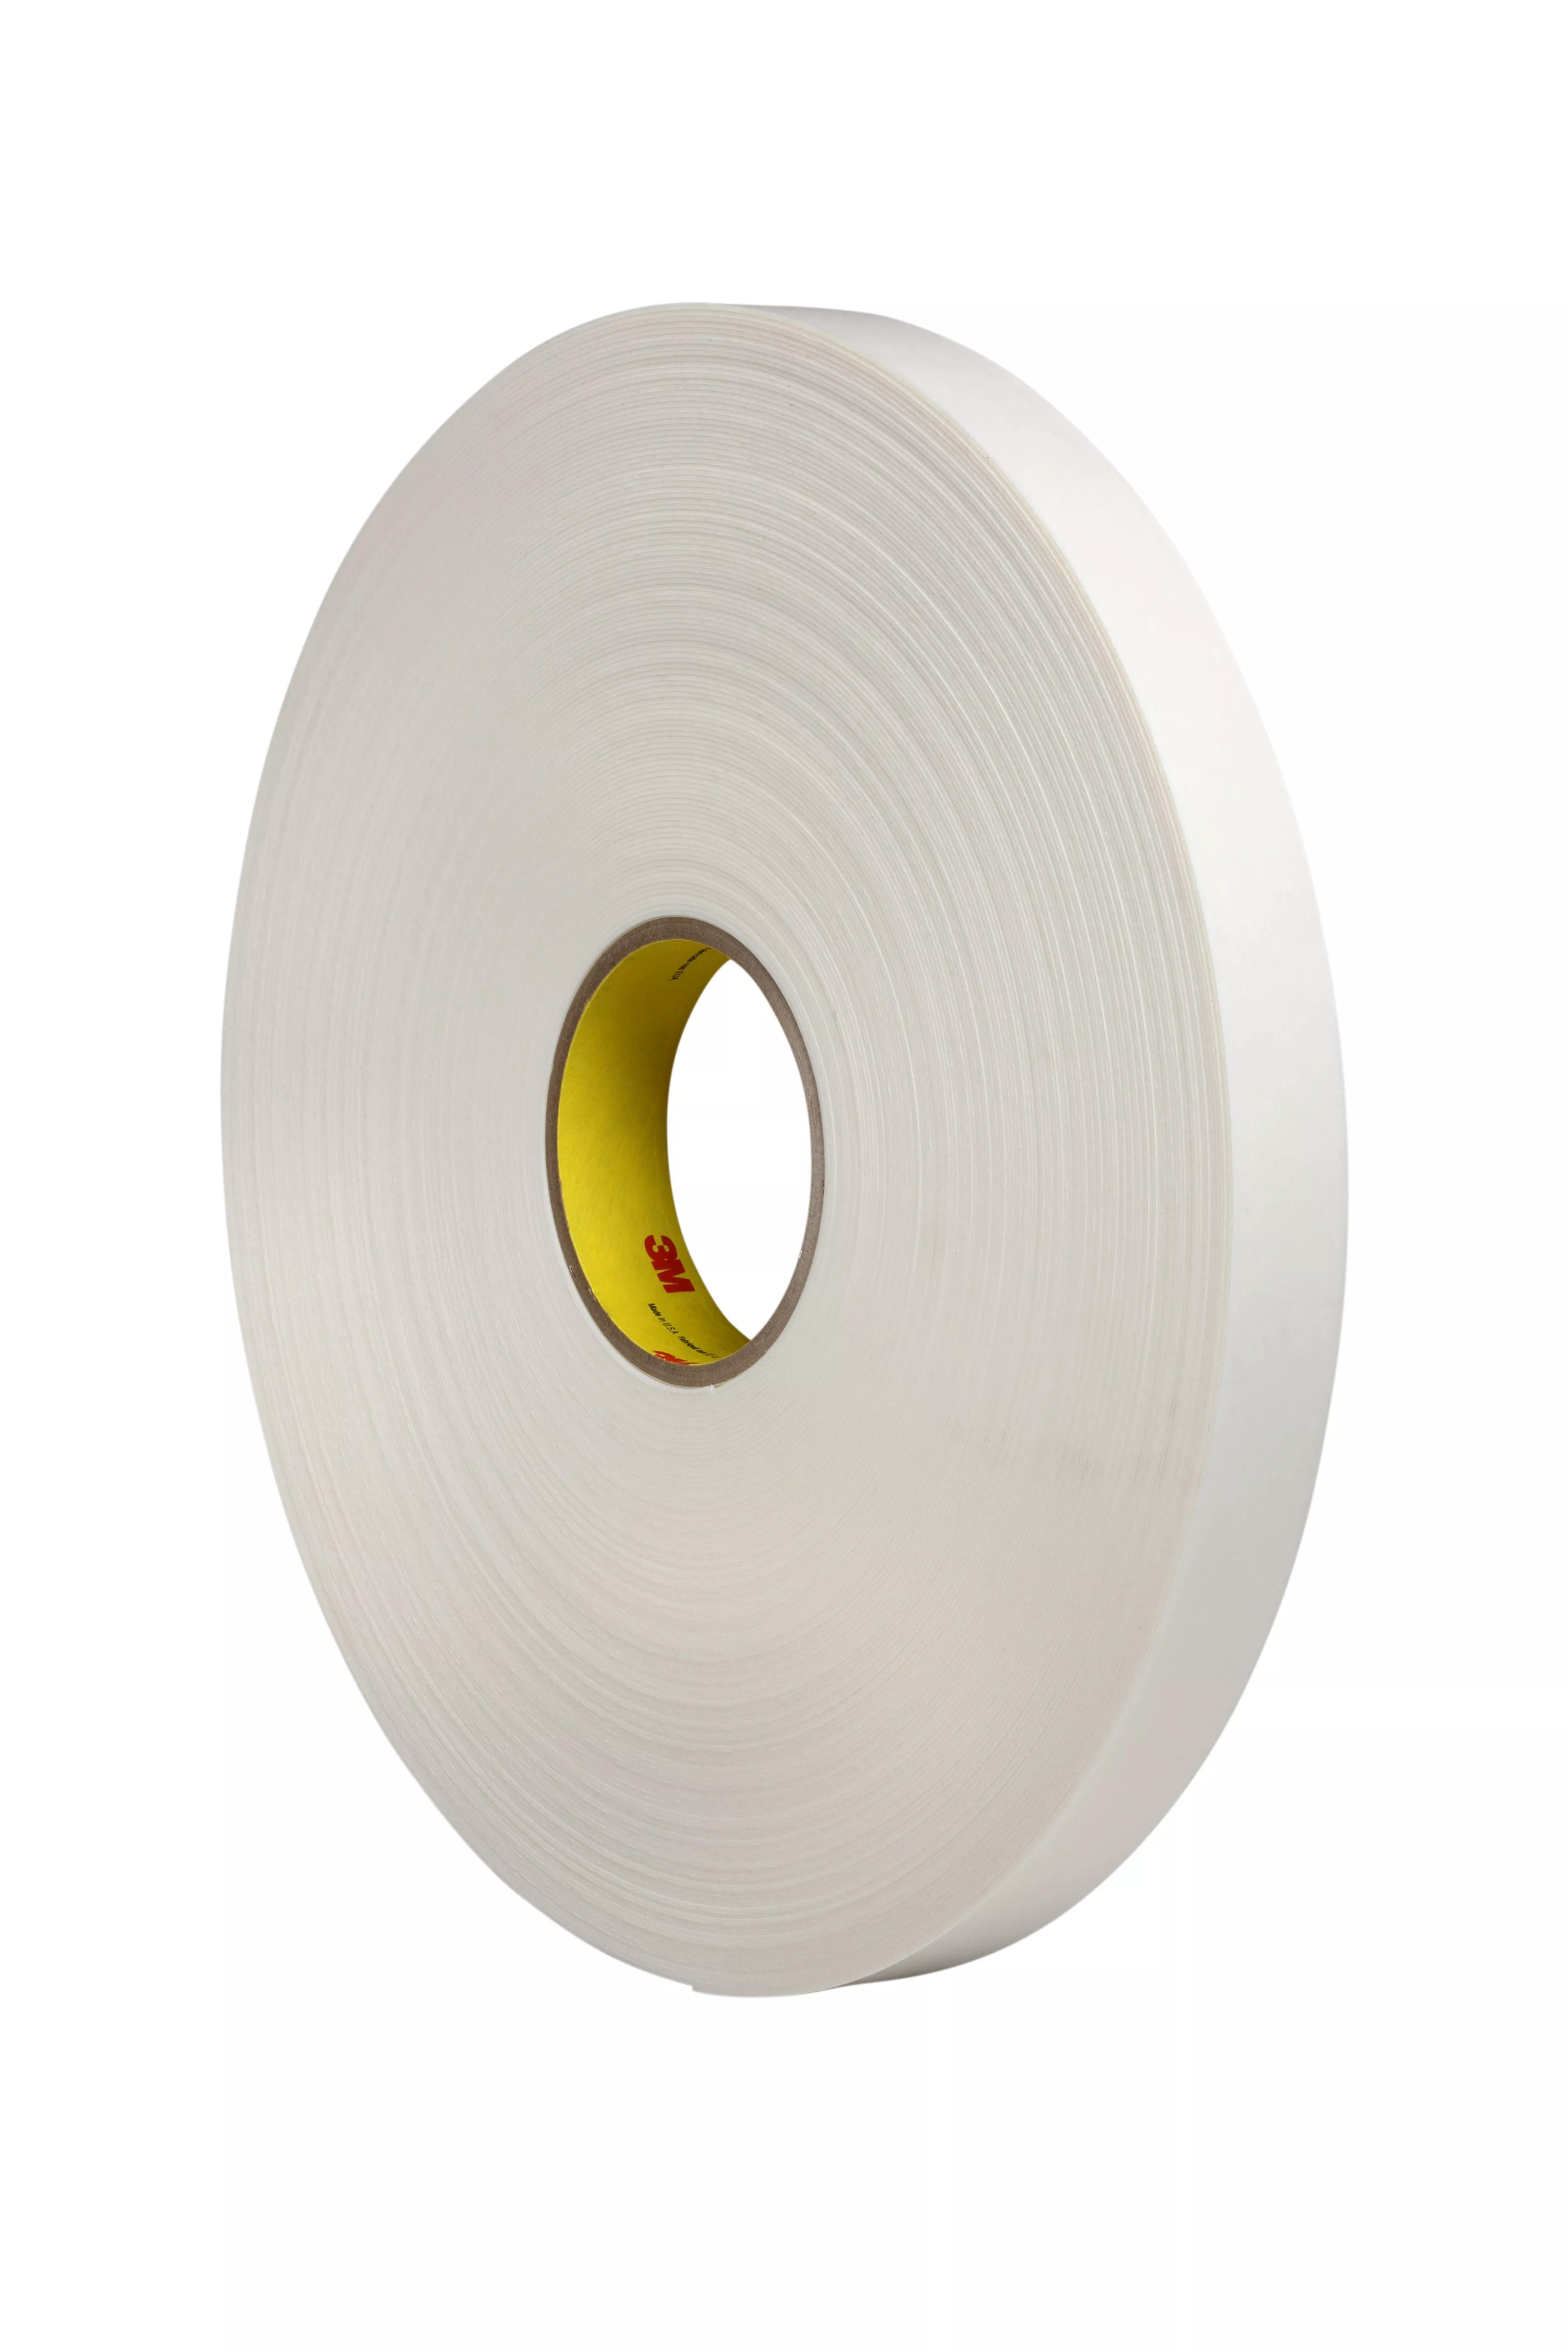 3M™ Double Coated Polyethylene Foam Tape 4462, Black, 48 in x 72 yd, 31
mil, 1 Roll/Case